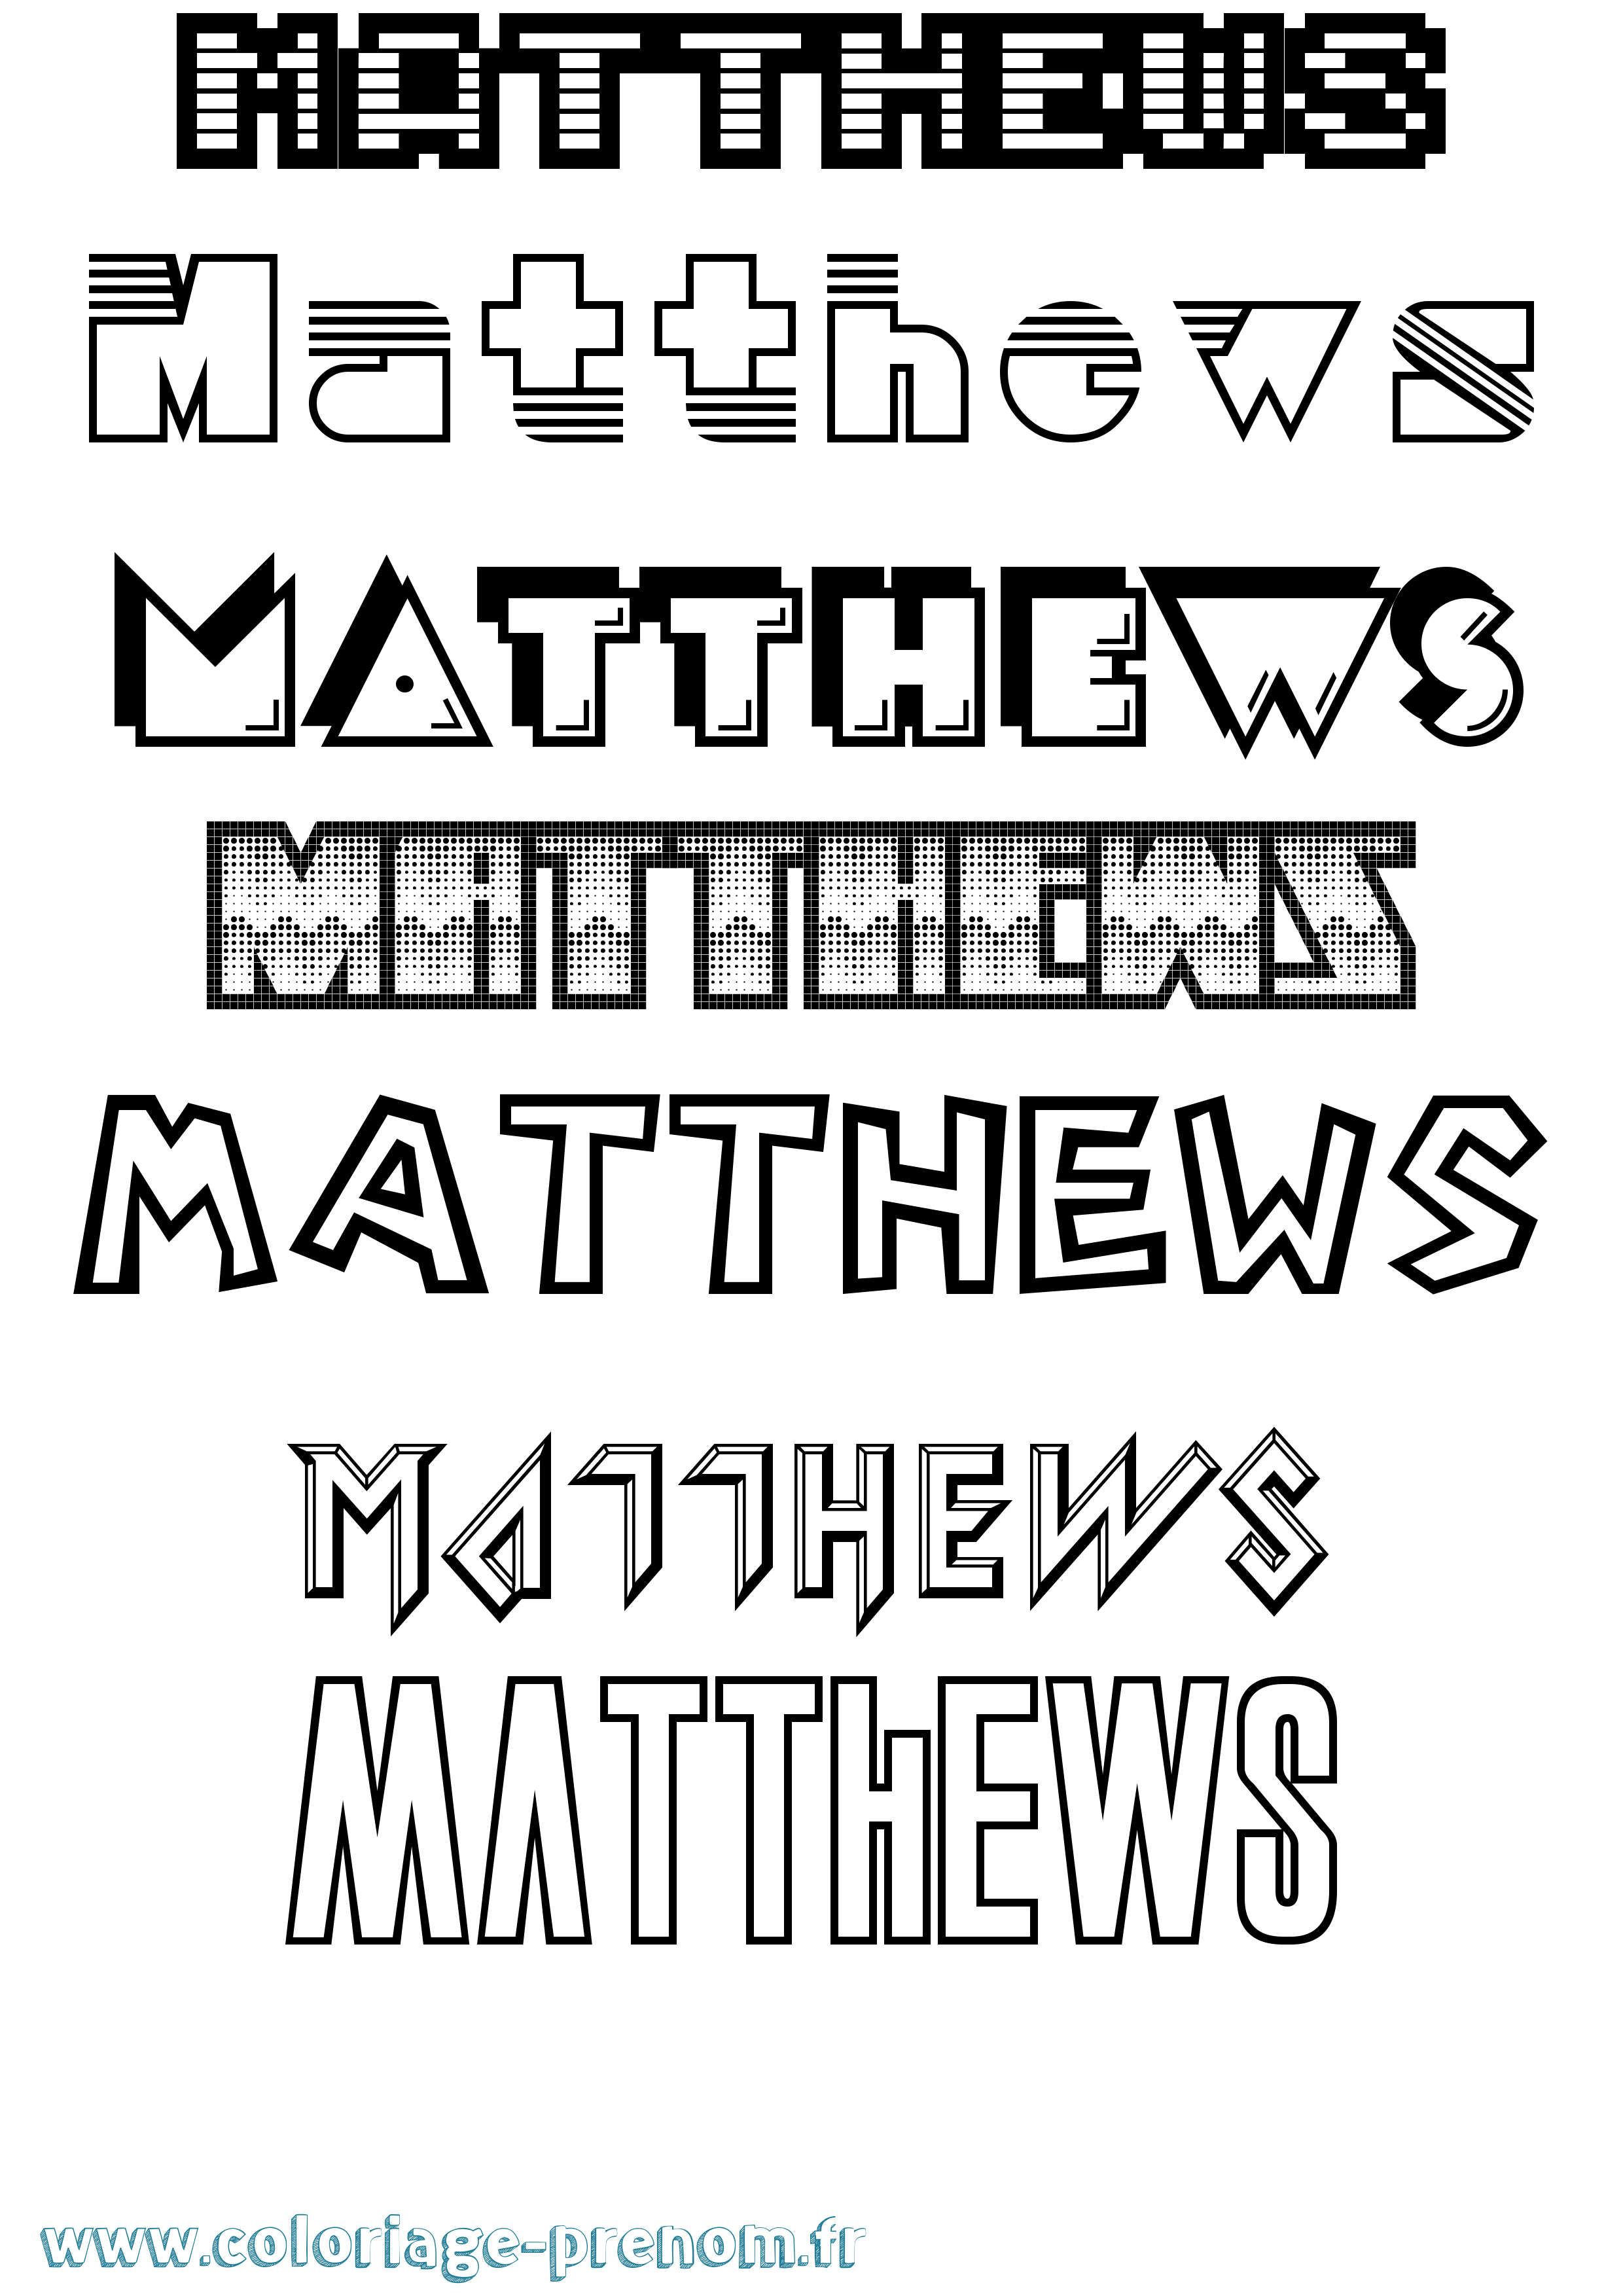 Coloriage prénom Matthews Jeux Vidéos